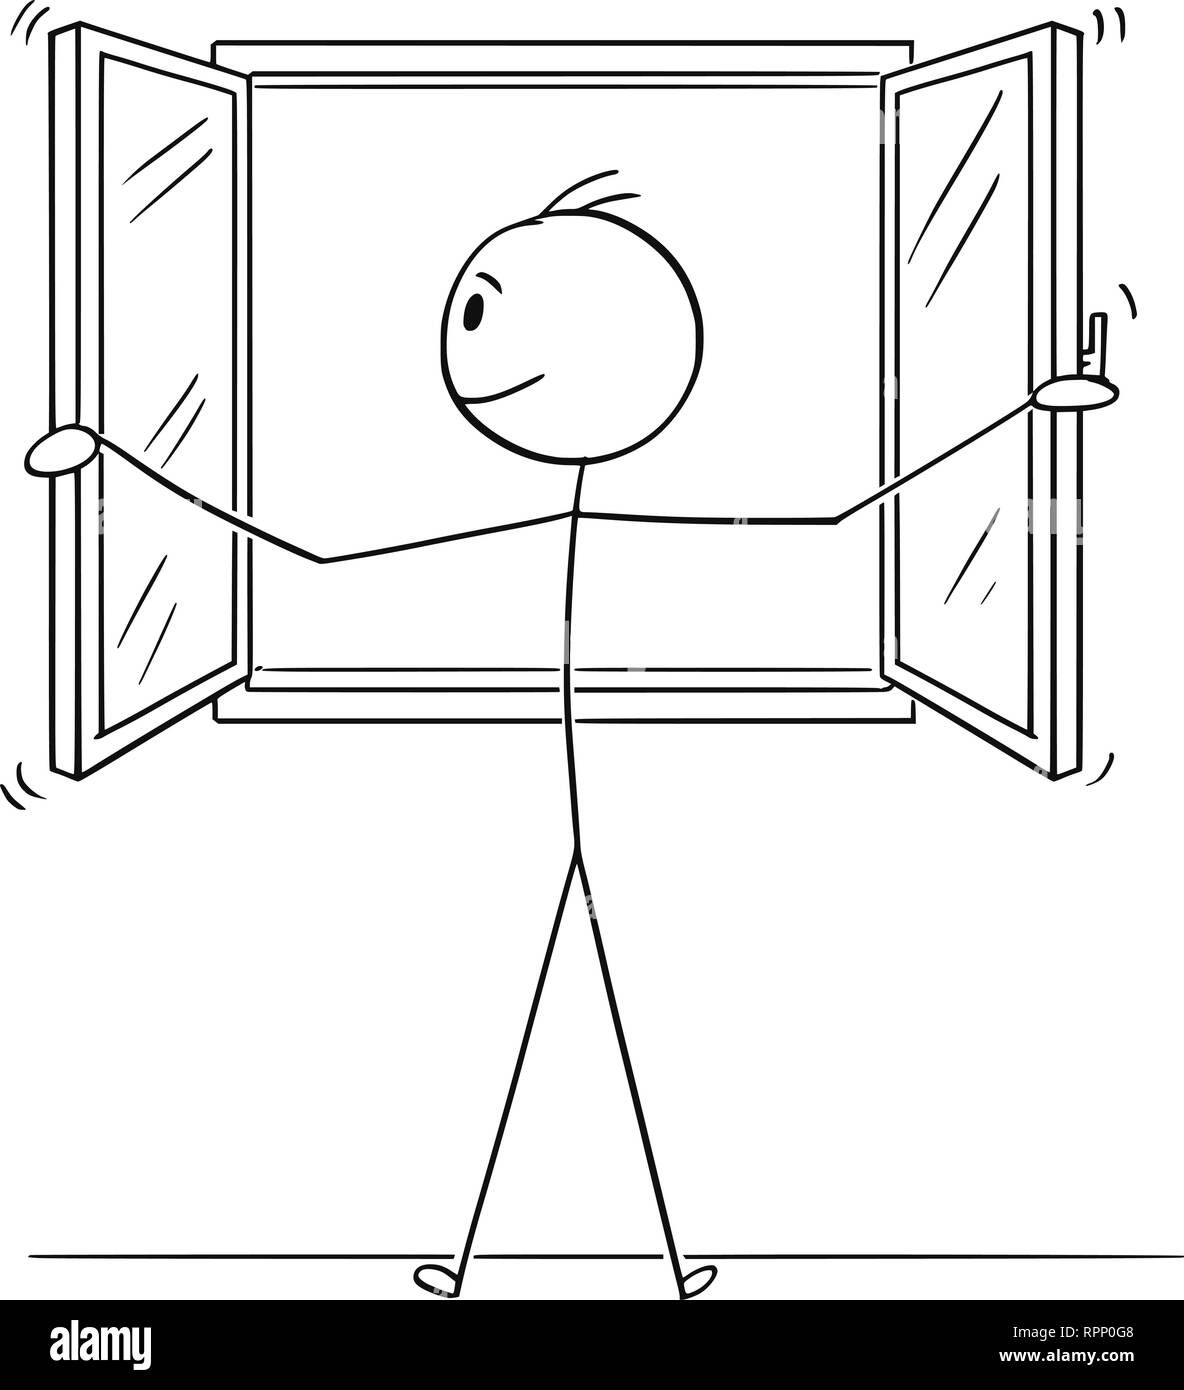 Cartoon of Man Opening Window Stock Vector